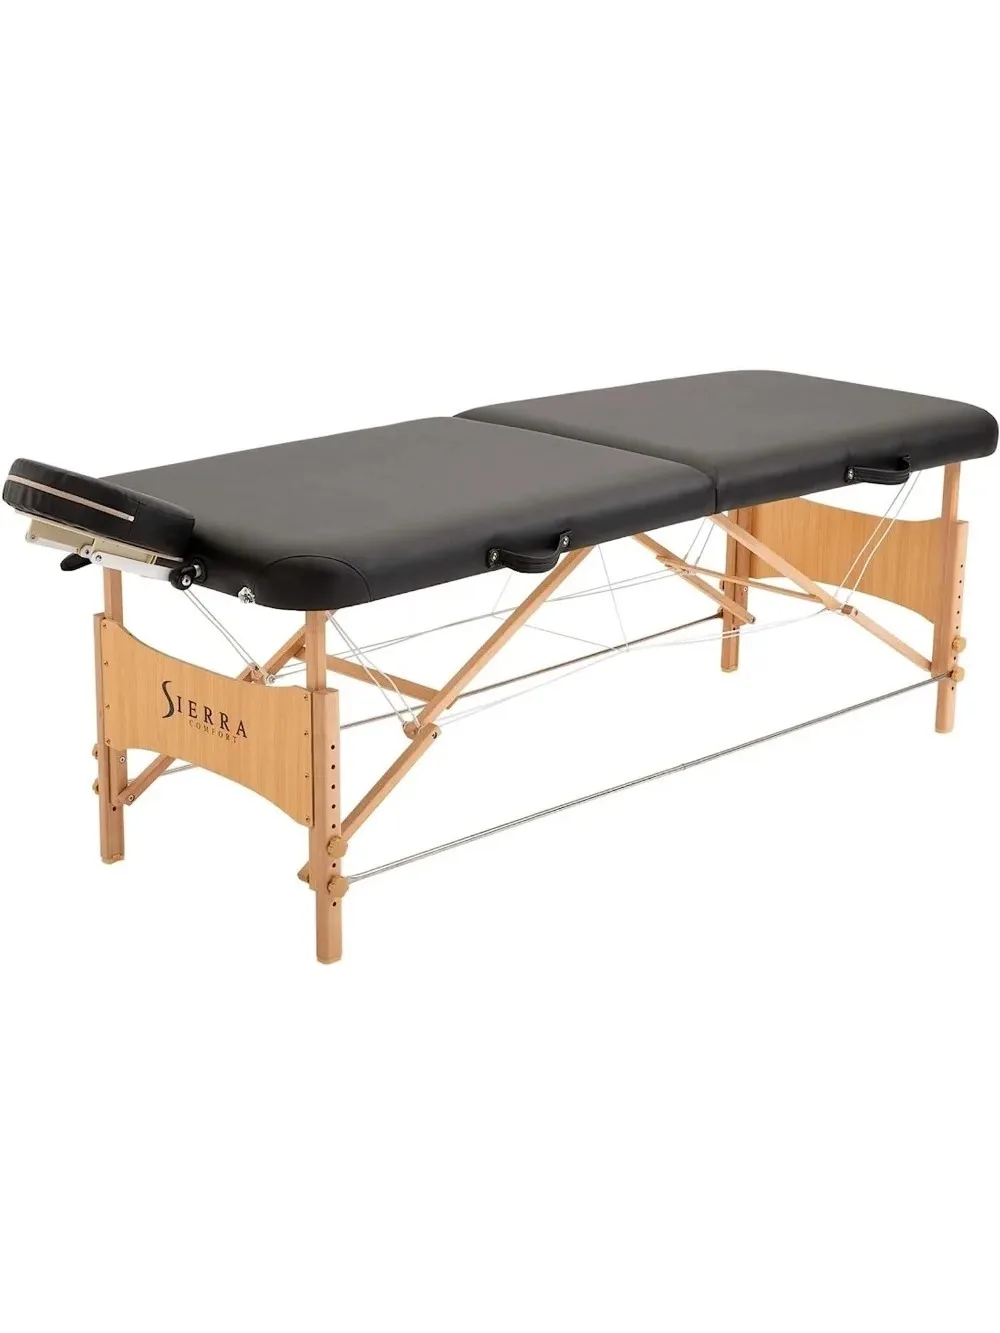 Mesa de masaje portátil con todo incluido, color negro